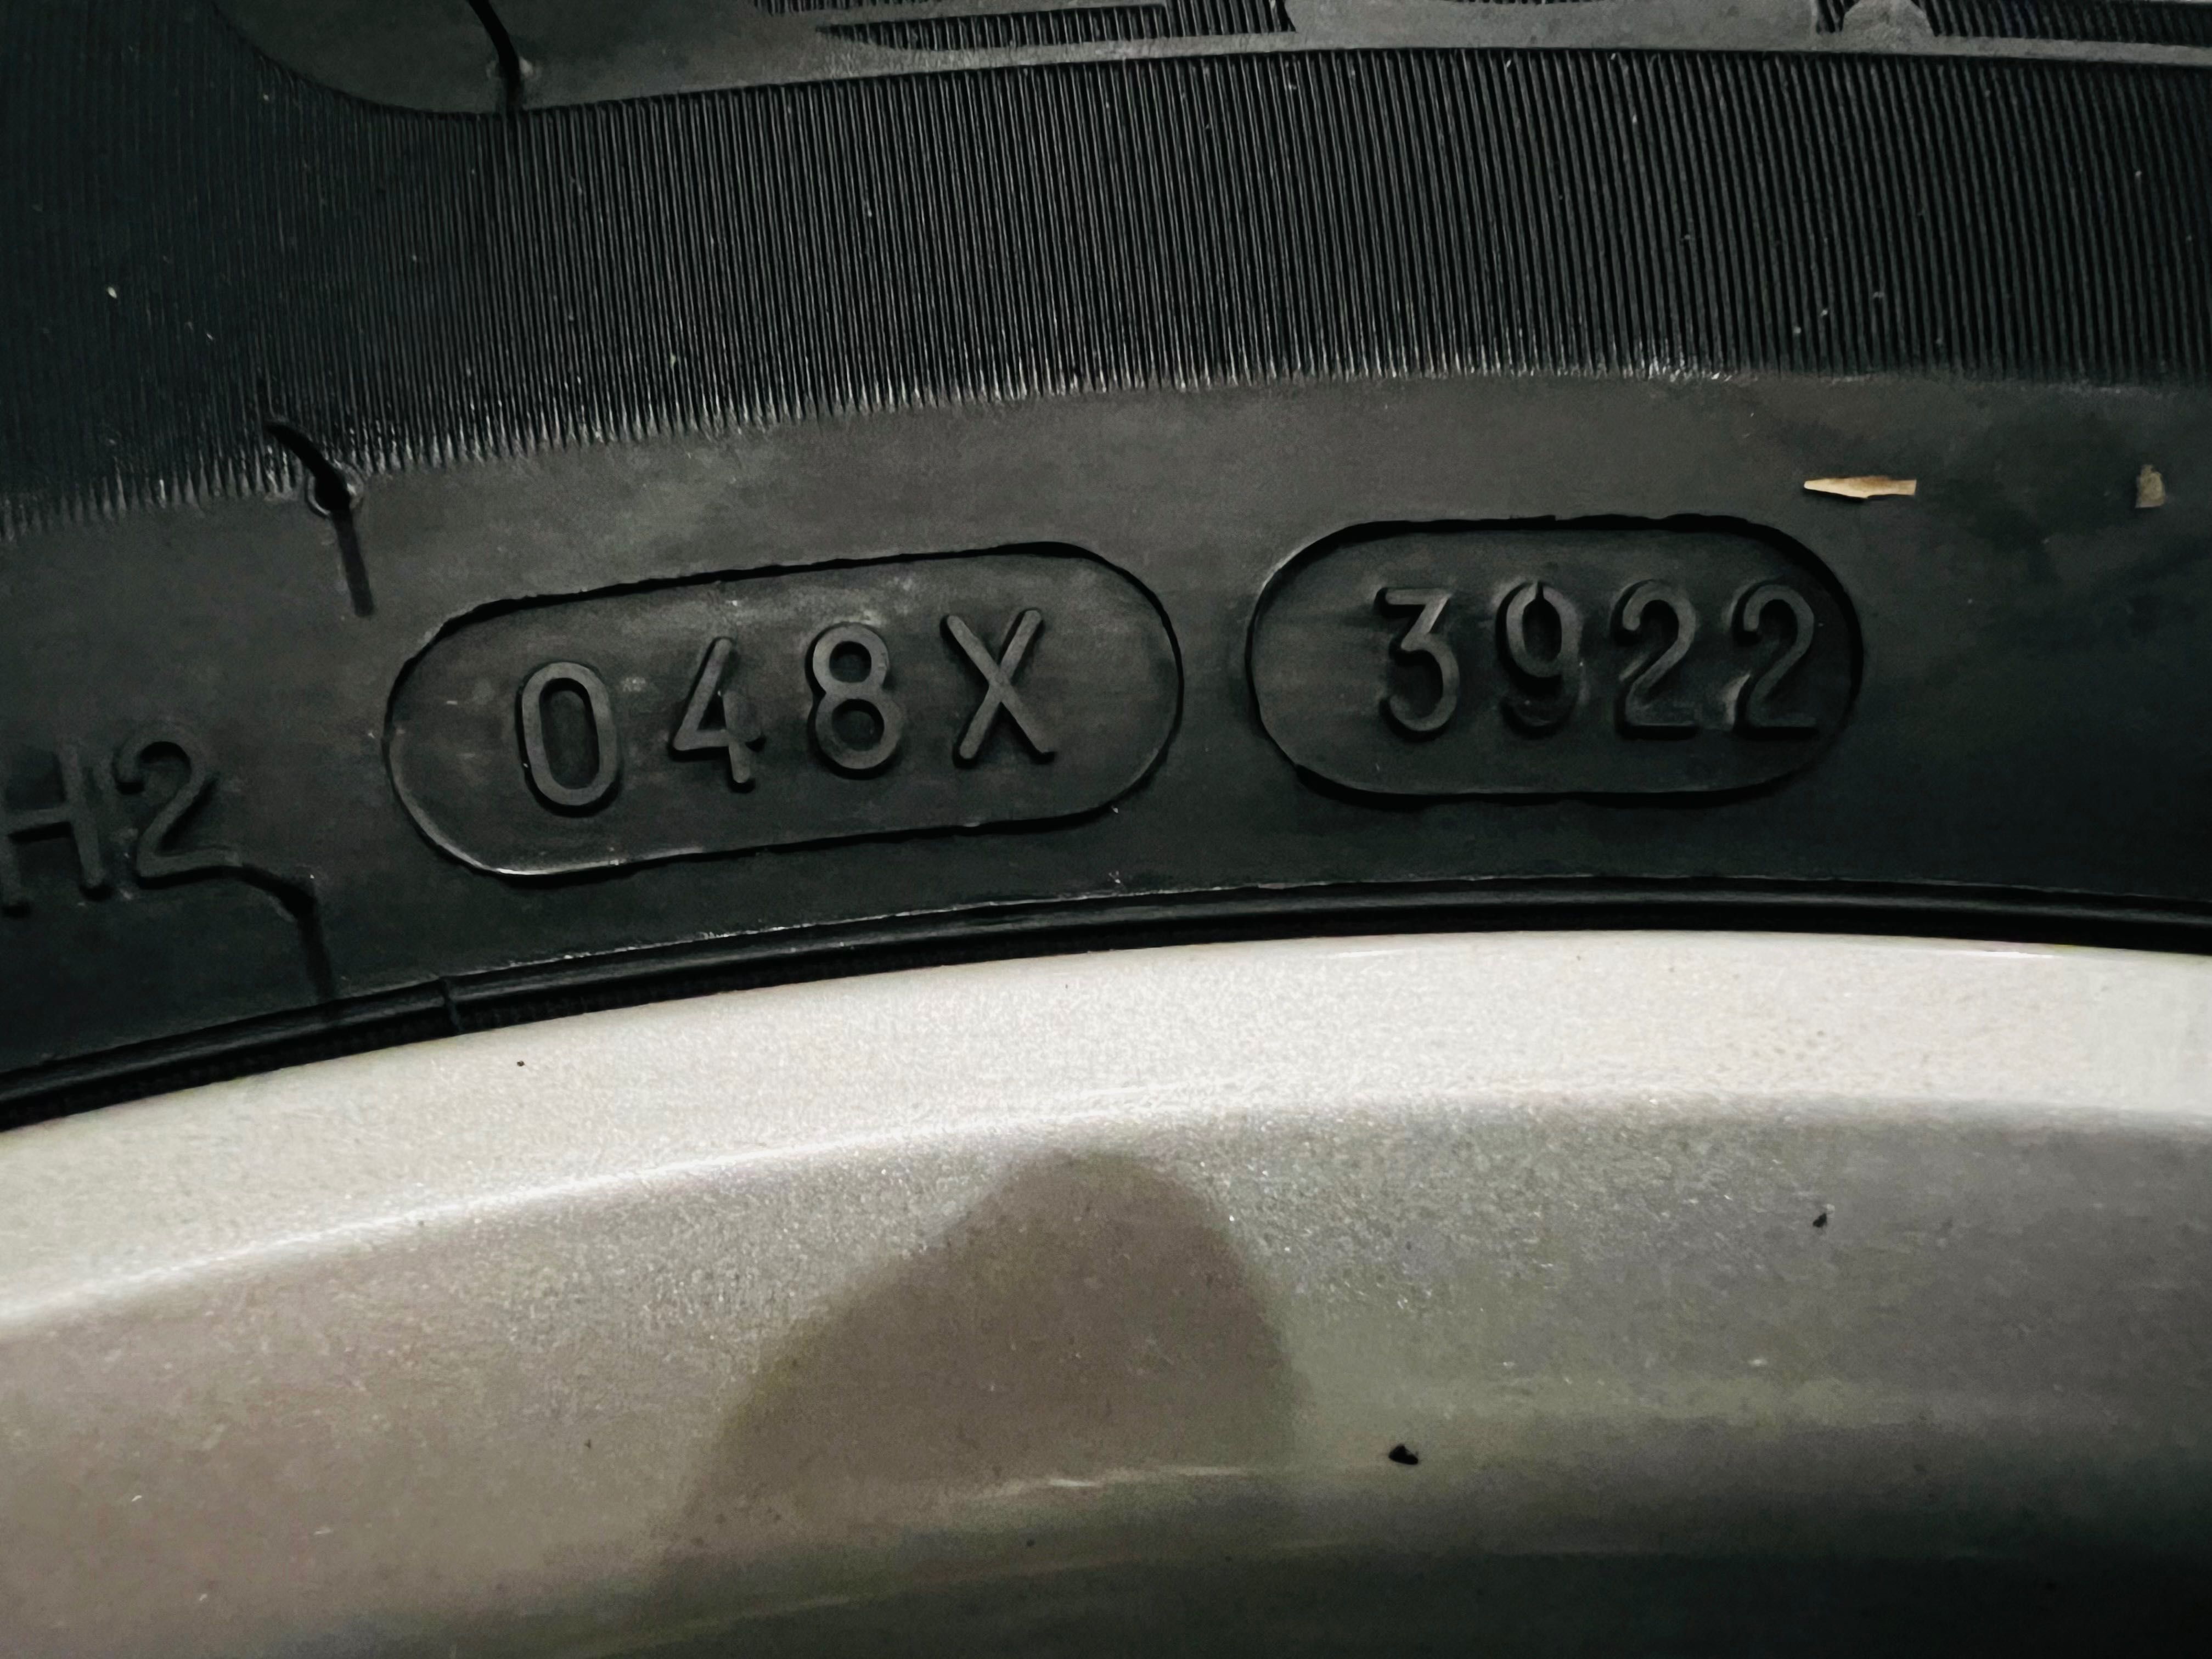 Комплект зимовоï гуми для SUV на дисках Tomasson.